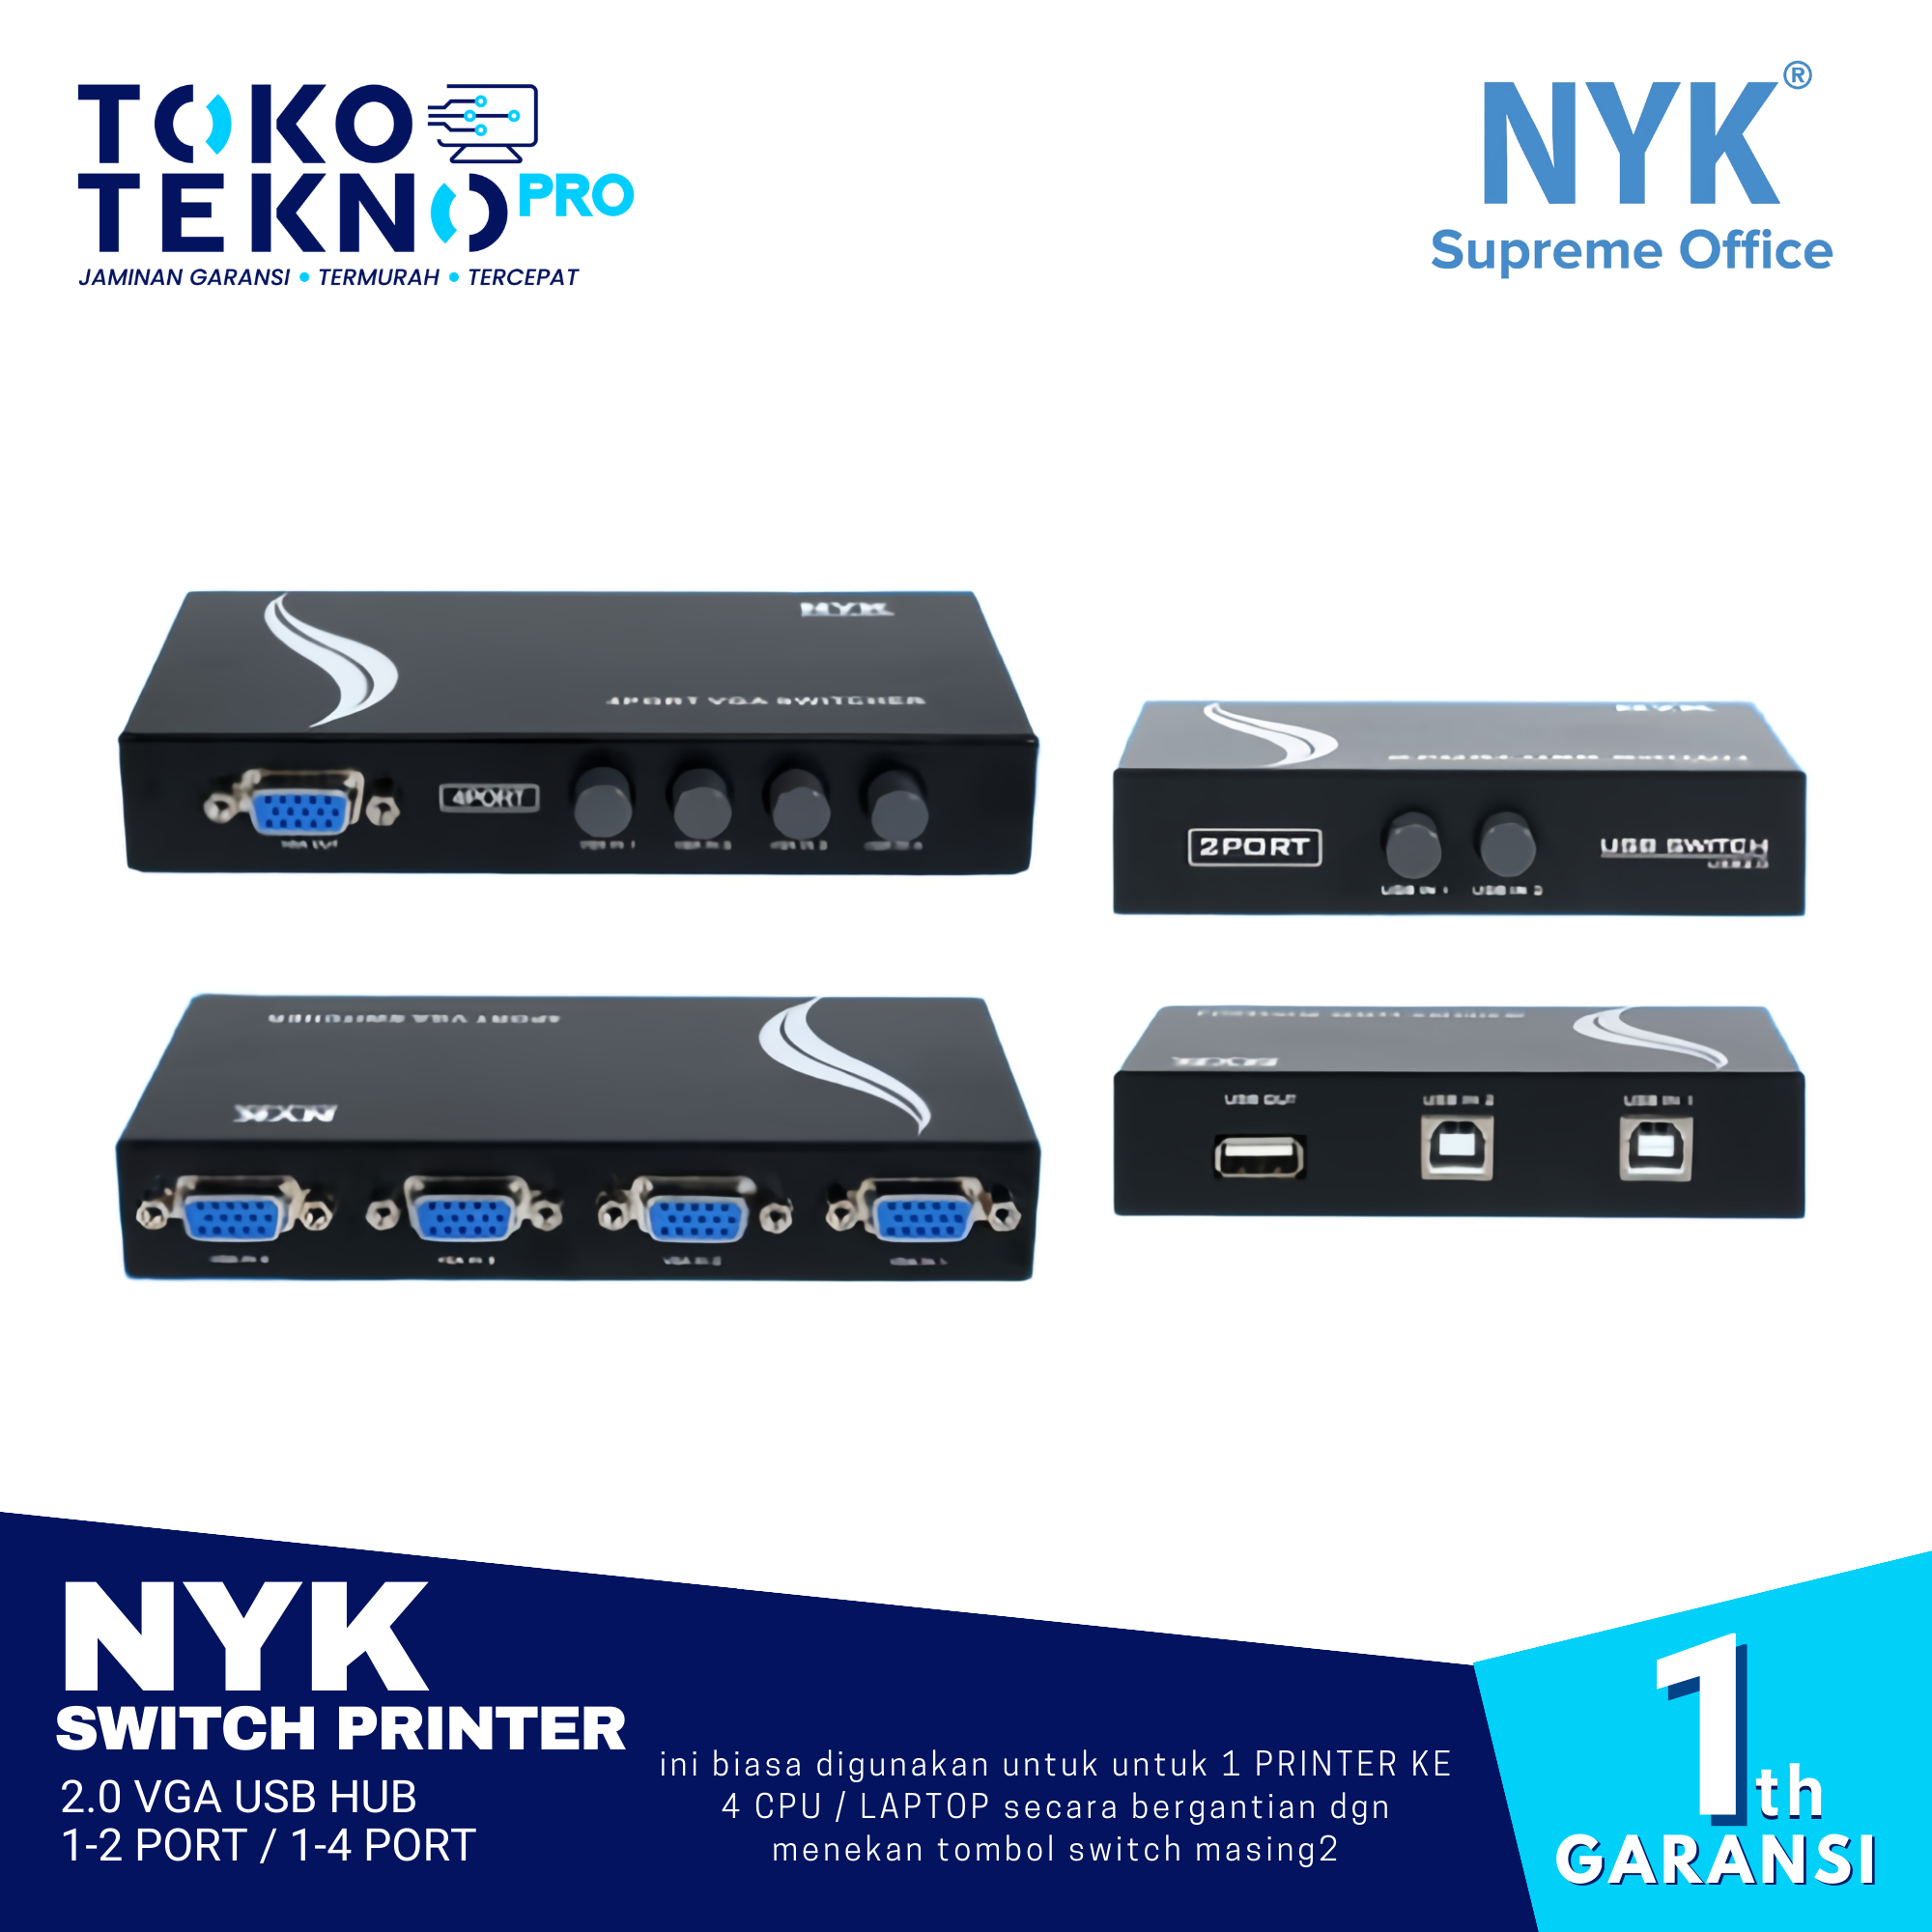 NYK Switch Printer 2.0 VGA USB HUB 1-2 Port / 1-4 Port